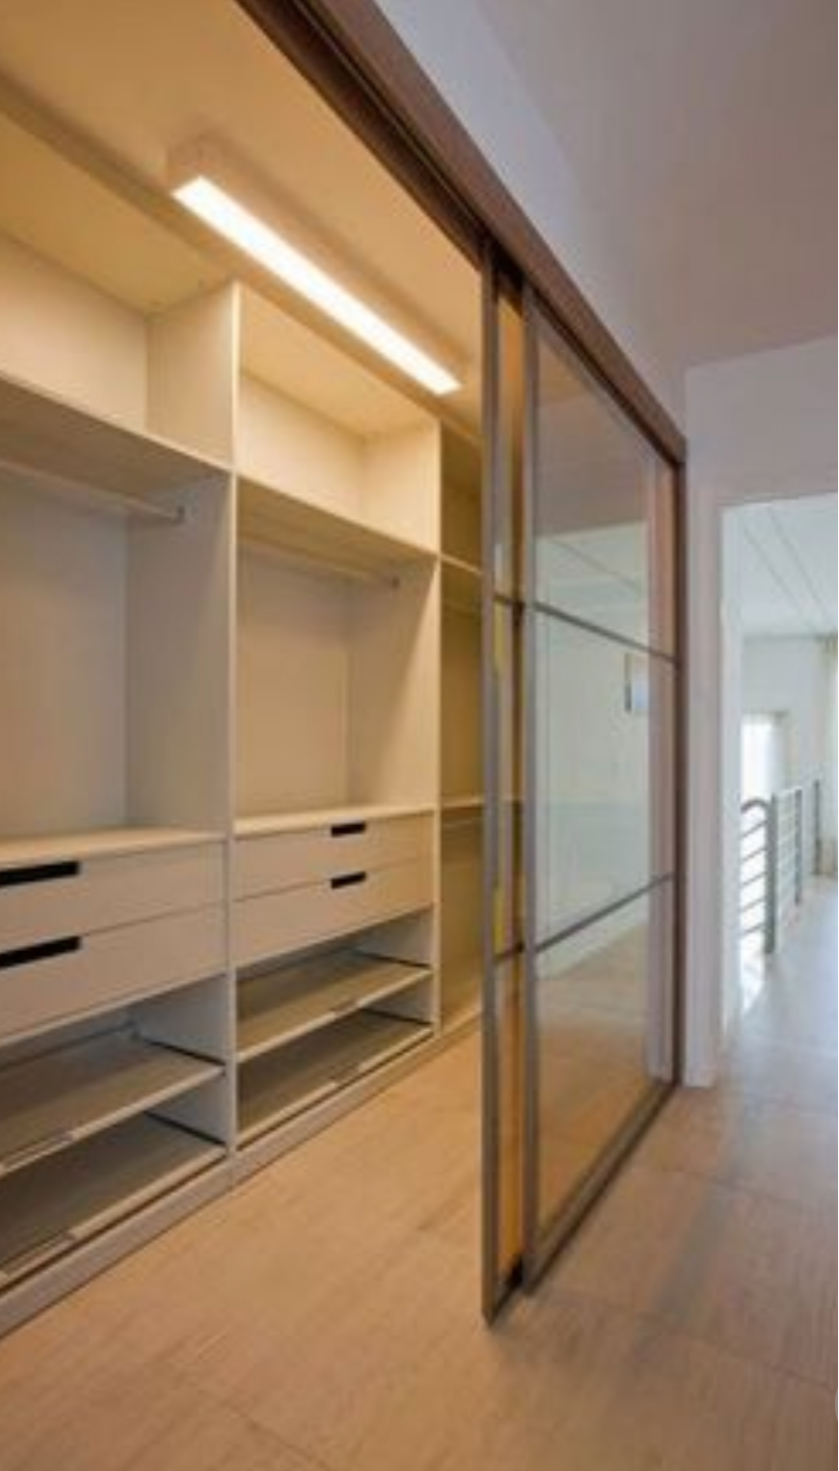 Линейная гардеробная комната с дверями купе Армавир